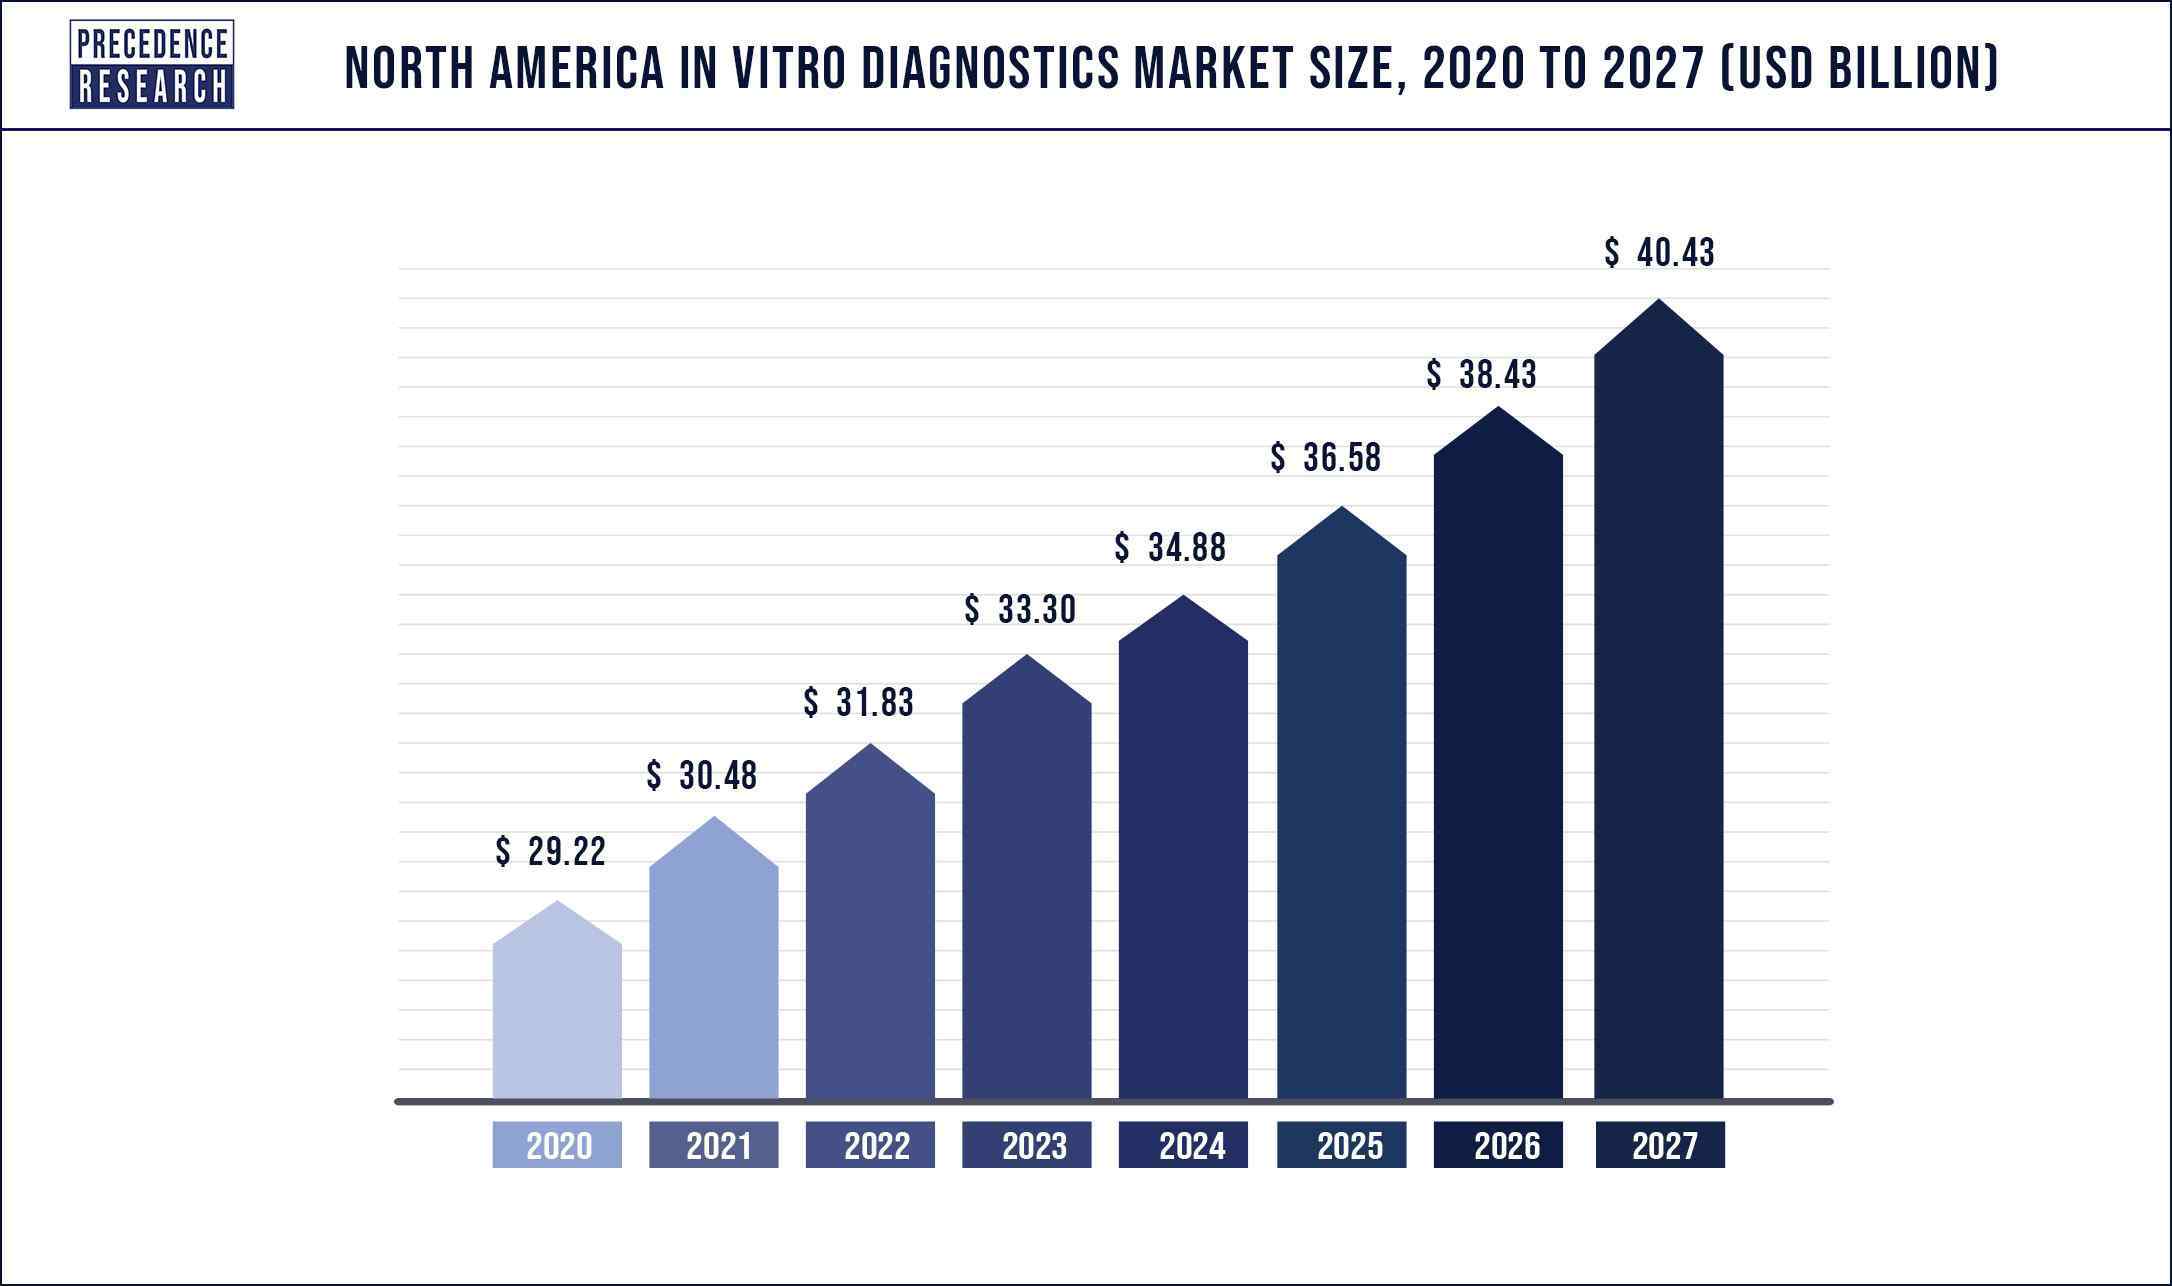 North America In Vitro Diagnostics Market Size 2020-2027